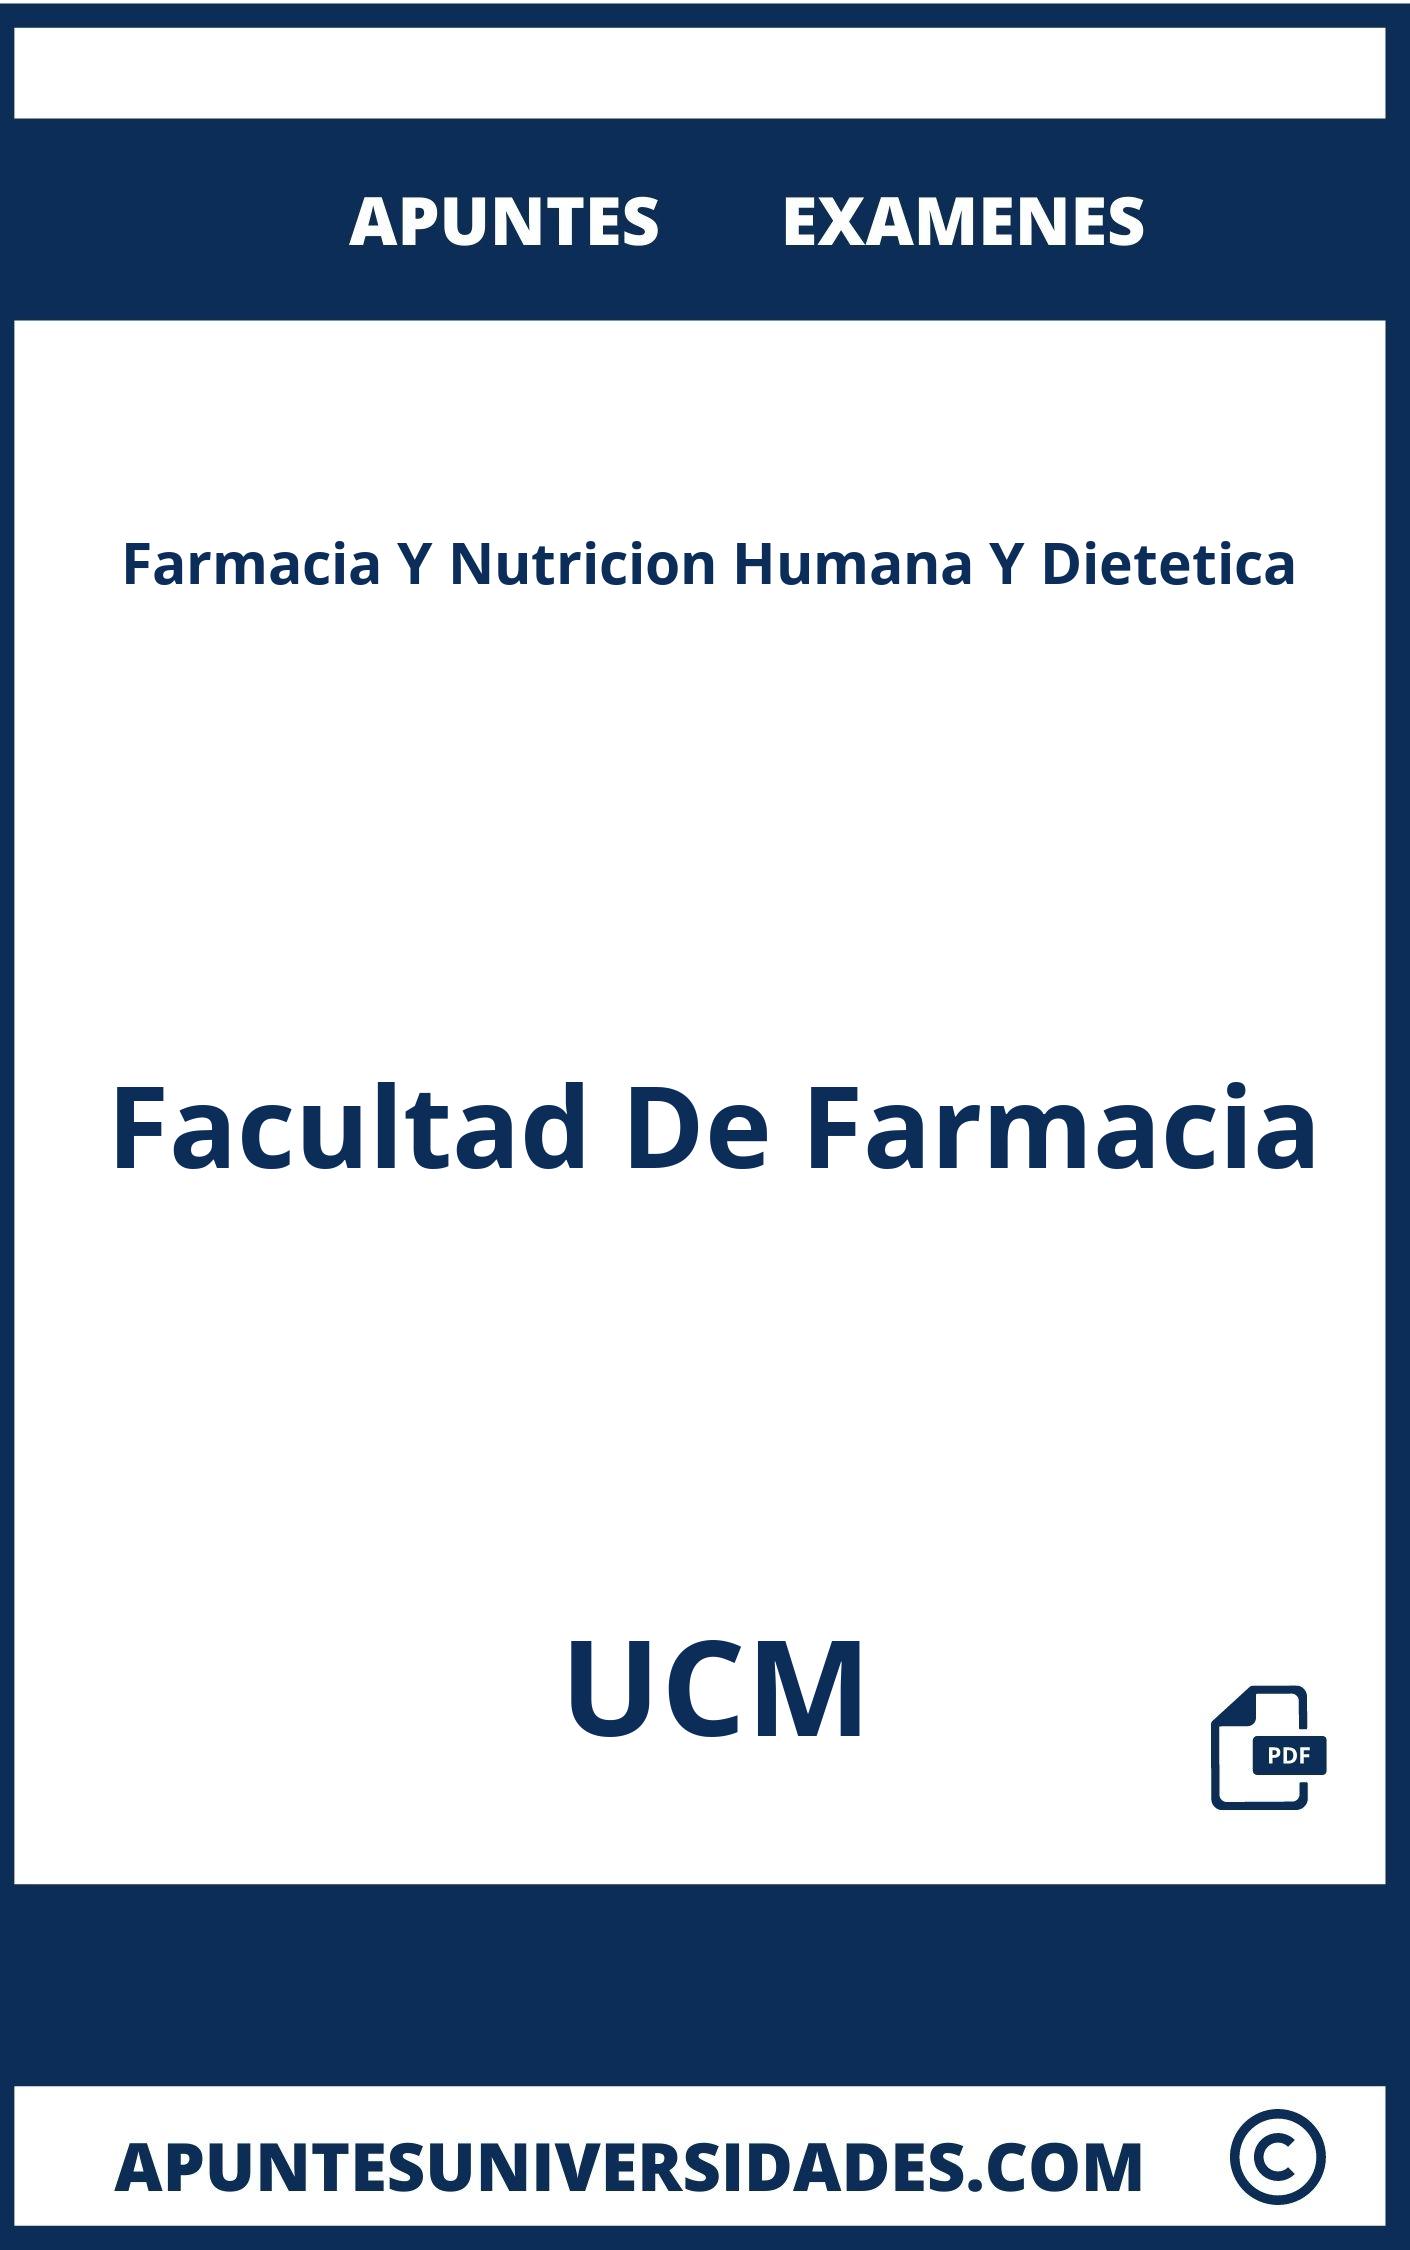 Examenes y Apuntes de Farmacia Y Nutricion Humana Y Dietetica UCM